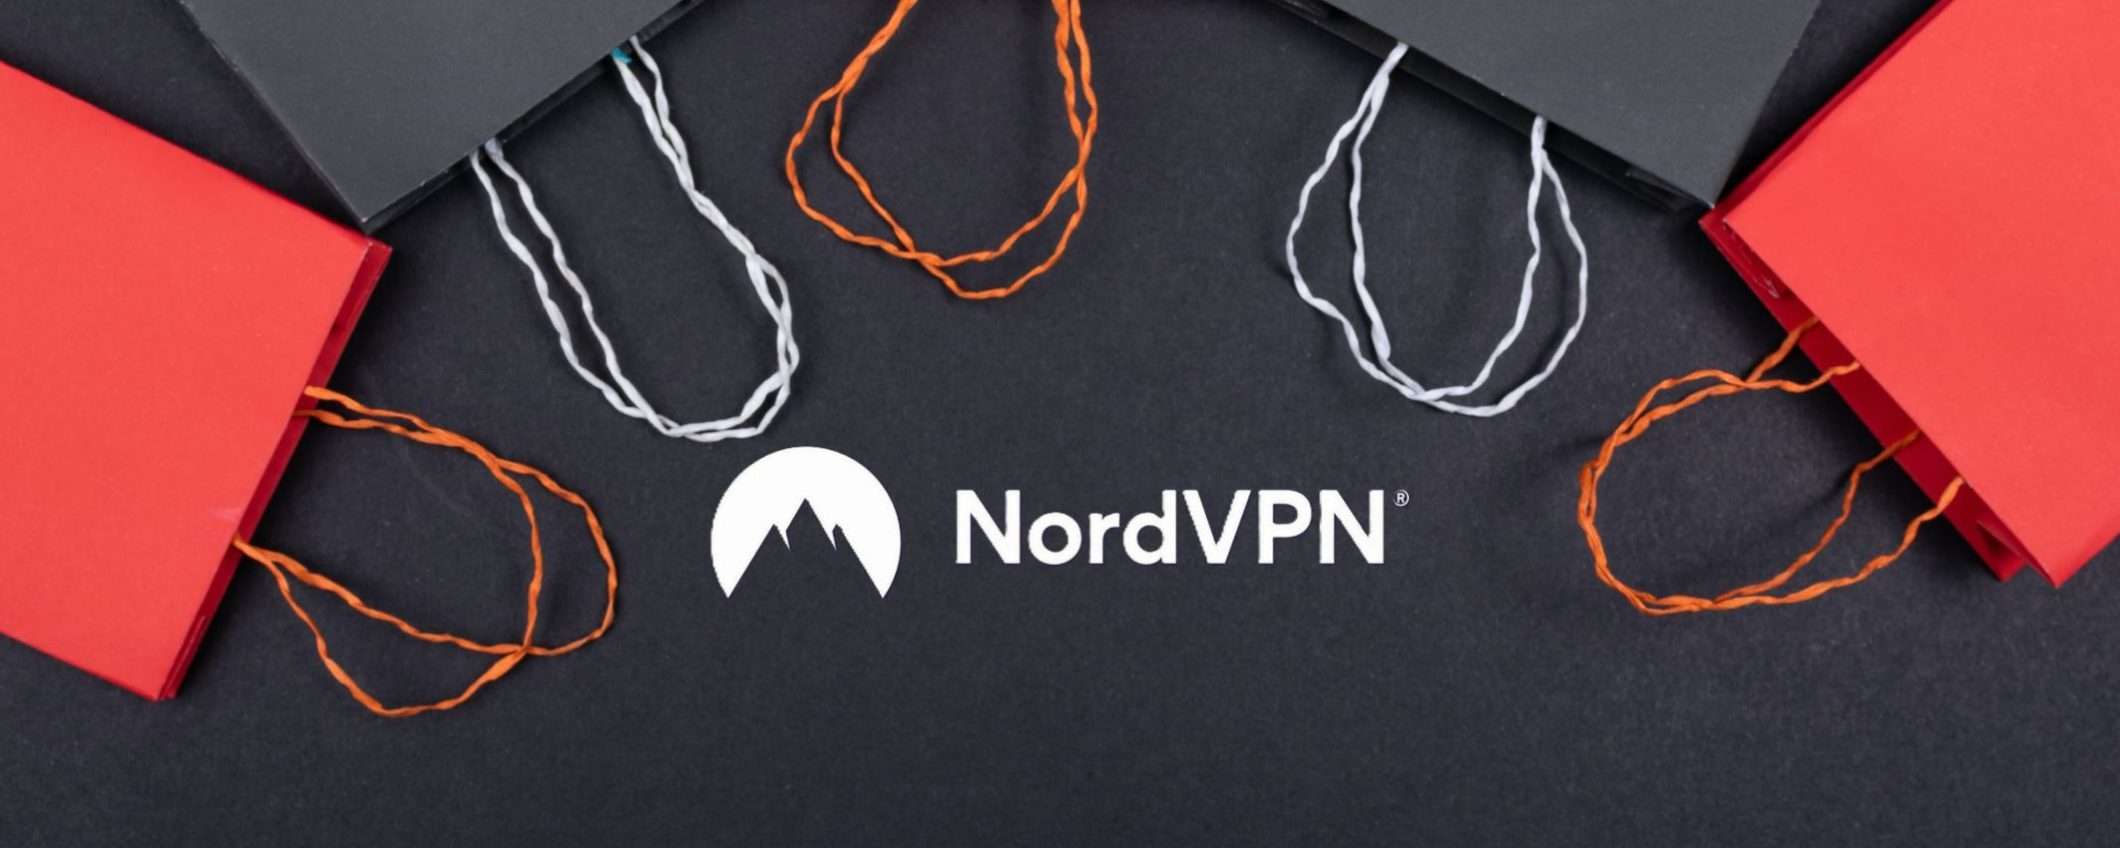 Black Friday NordVPN: fino al 65% di sconto e prezzi da 3,79€ al mese